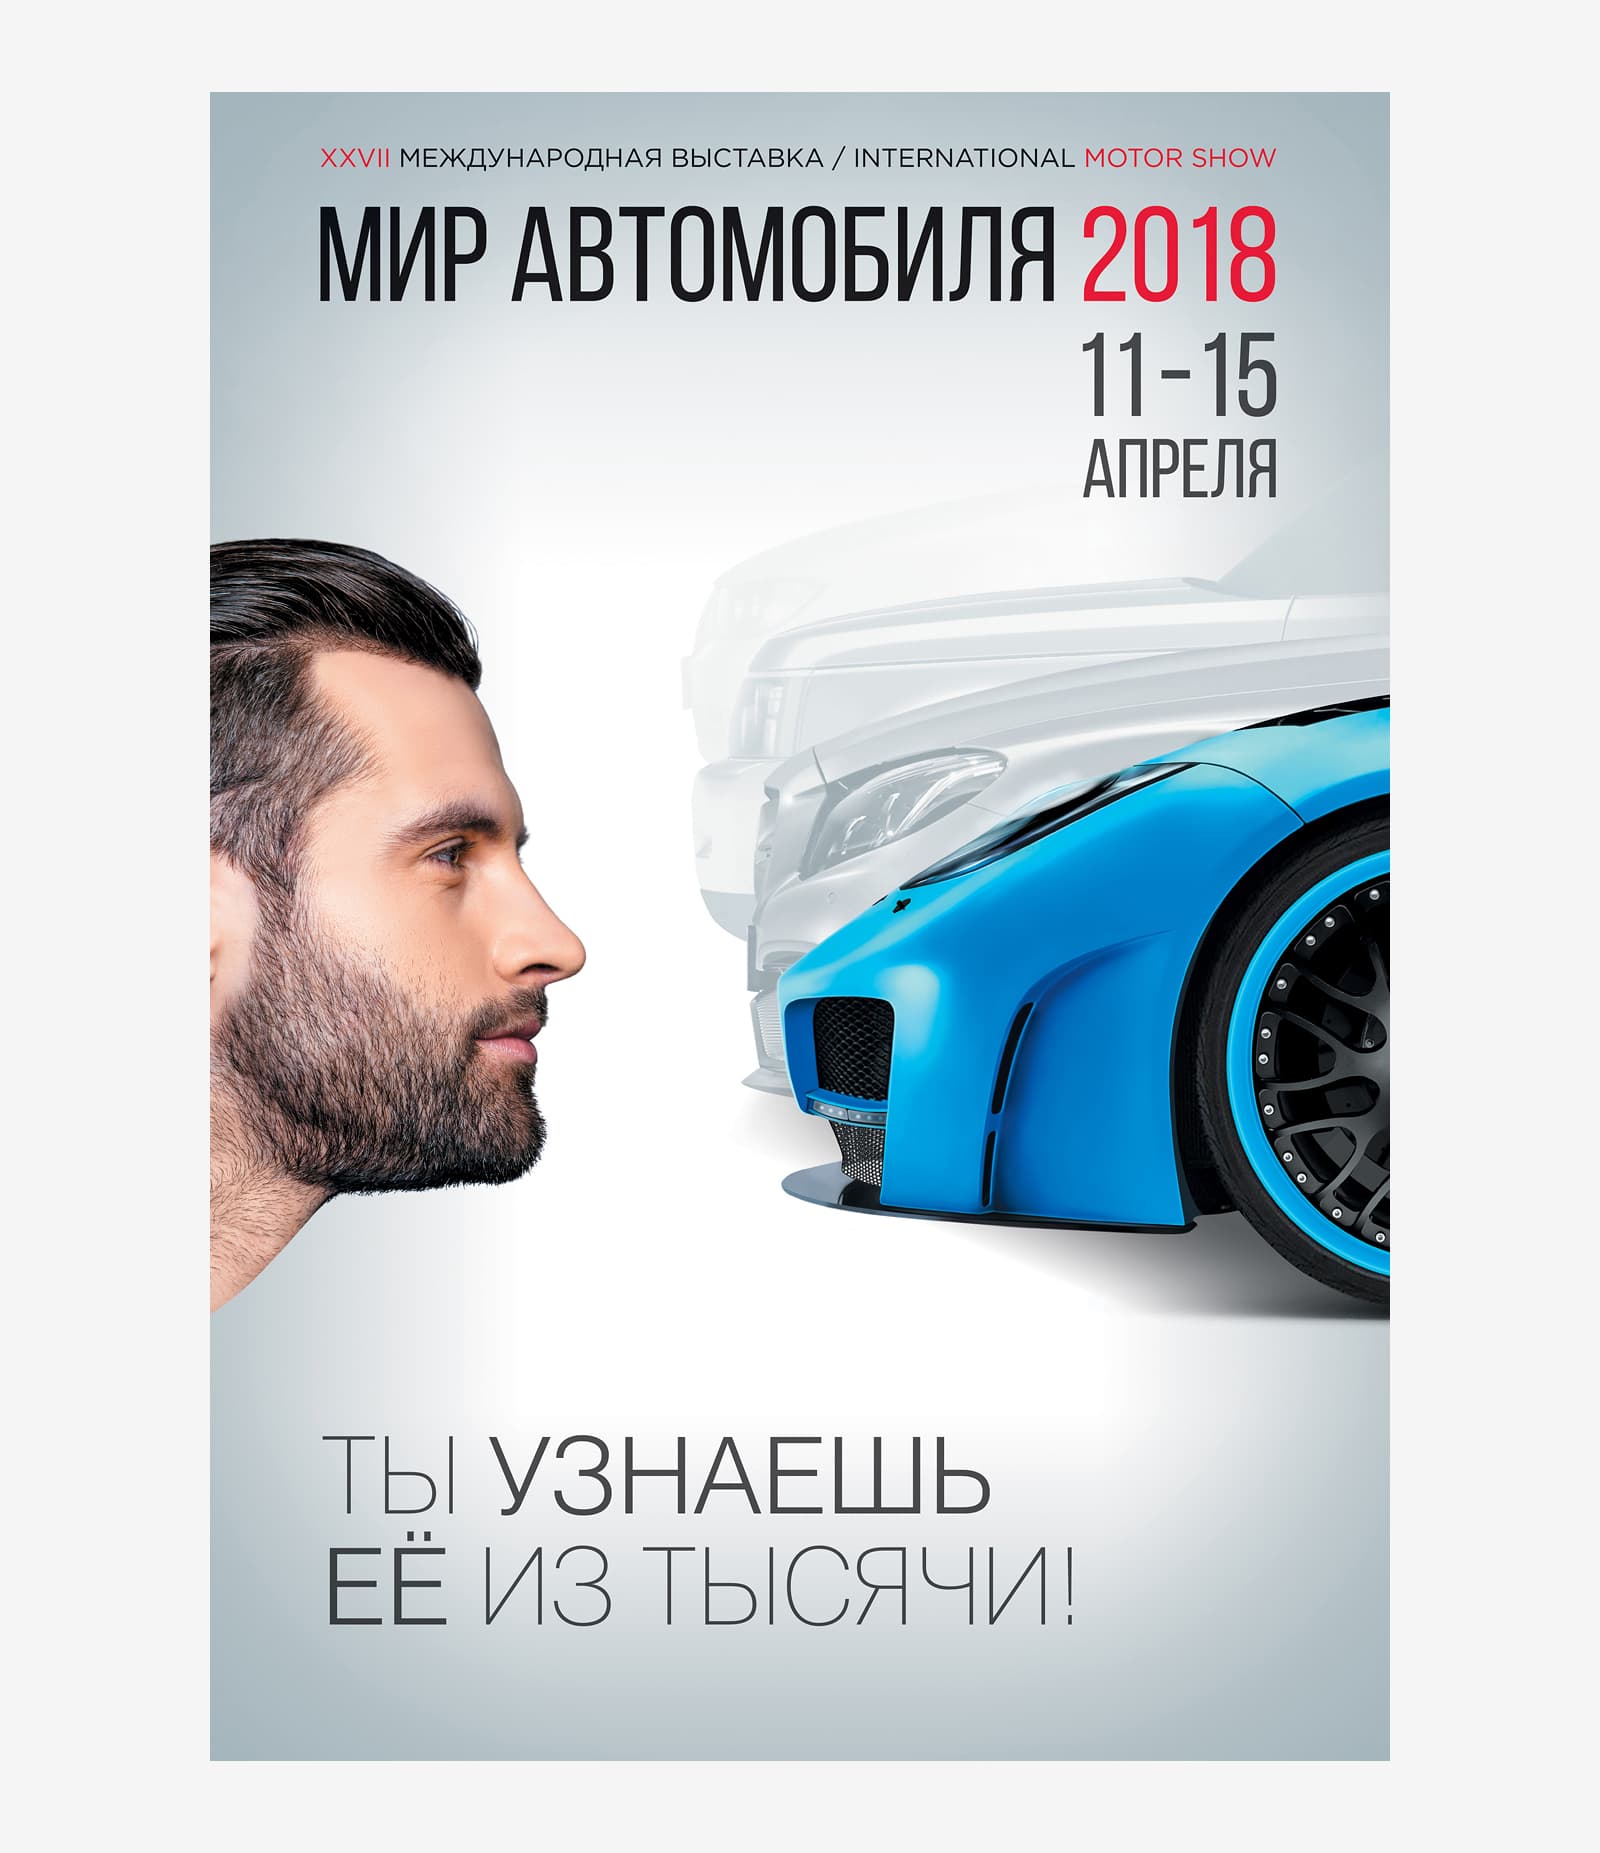 Сделали дизайн рекламного постера для XXVII Международной выставки «Мир автомобиля»